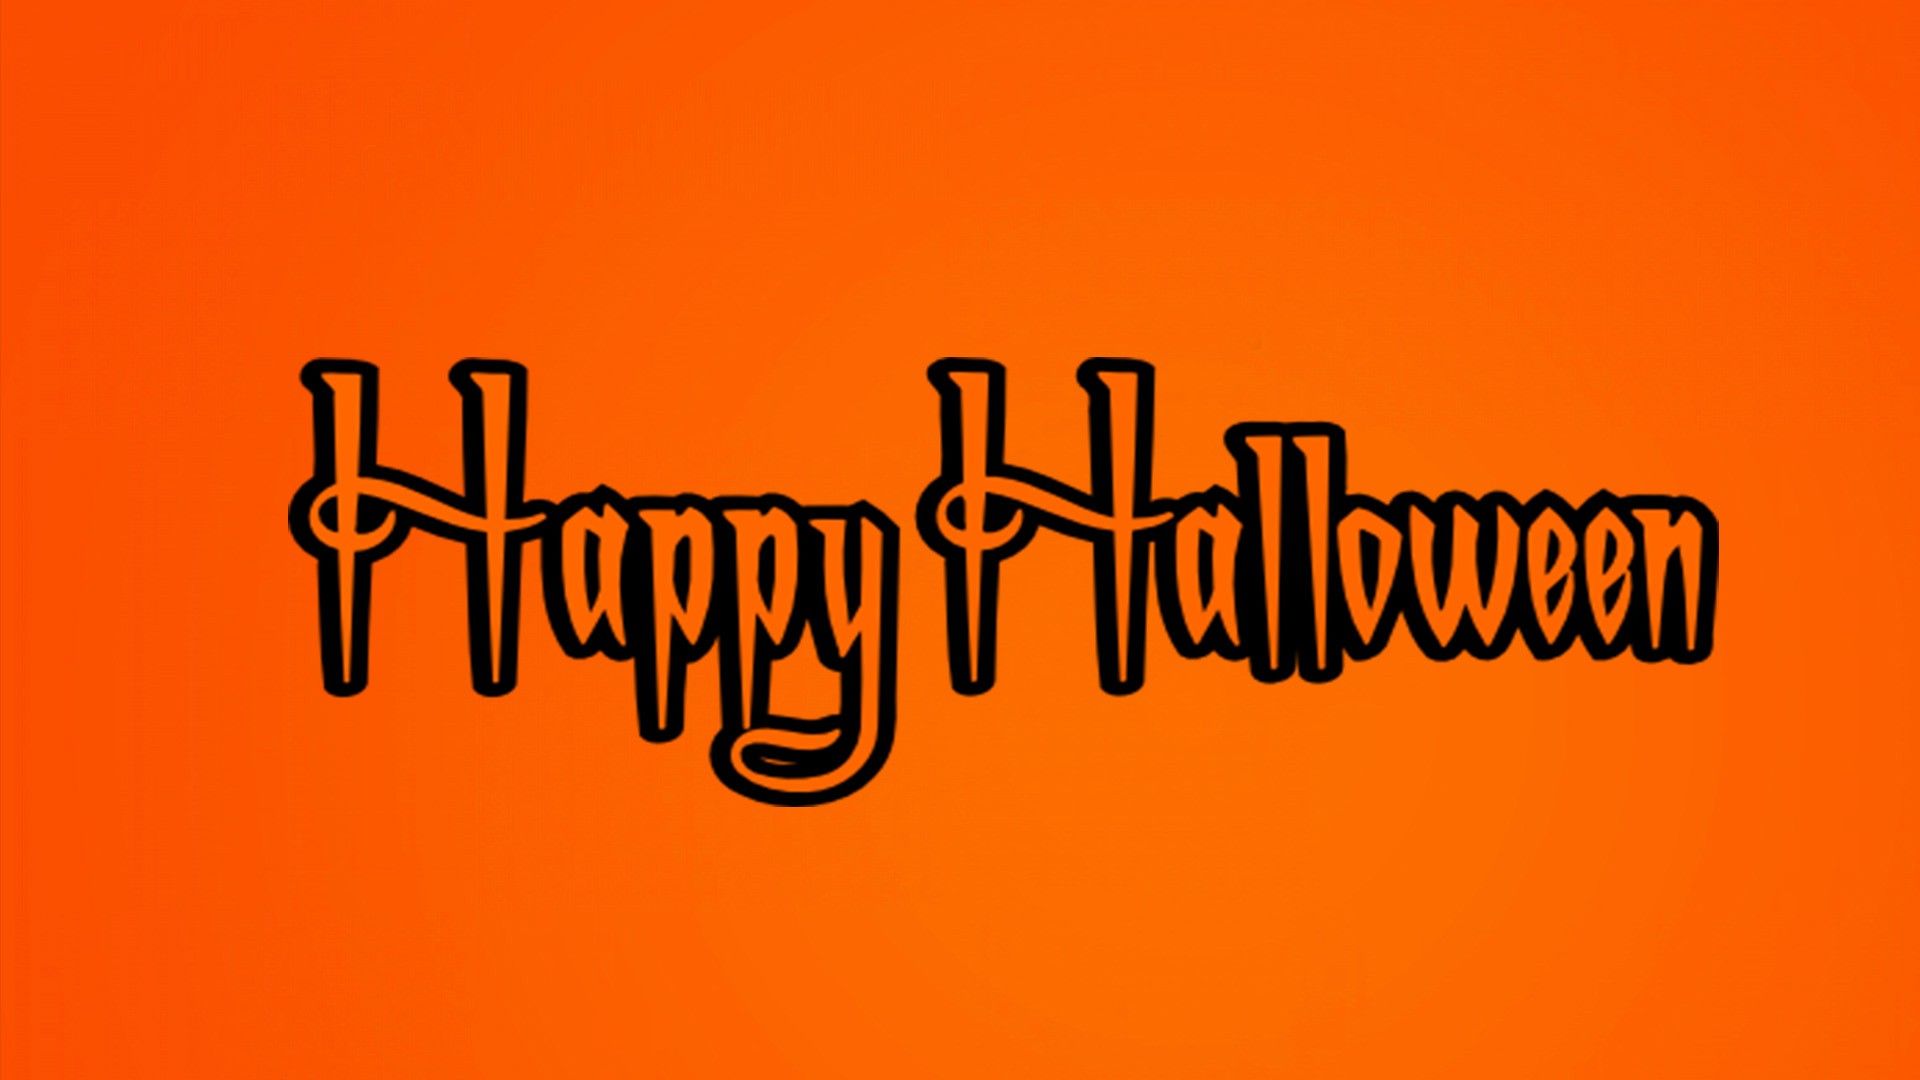 Happy Halloween Desktop Wallpaper 34822